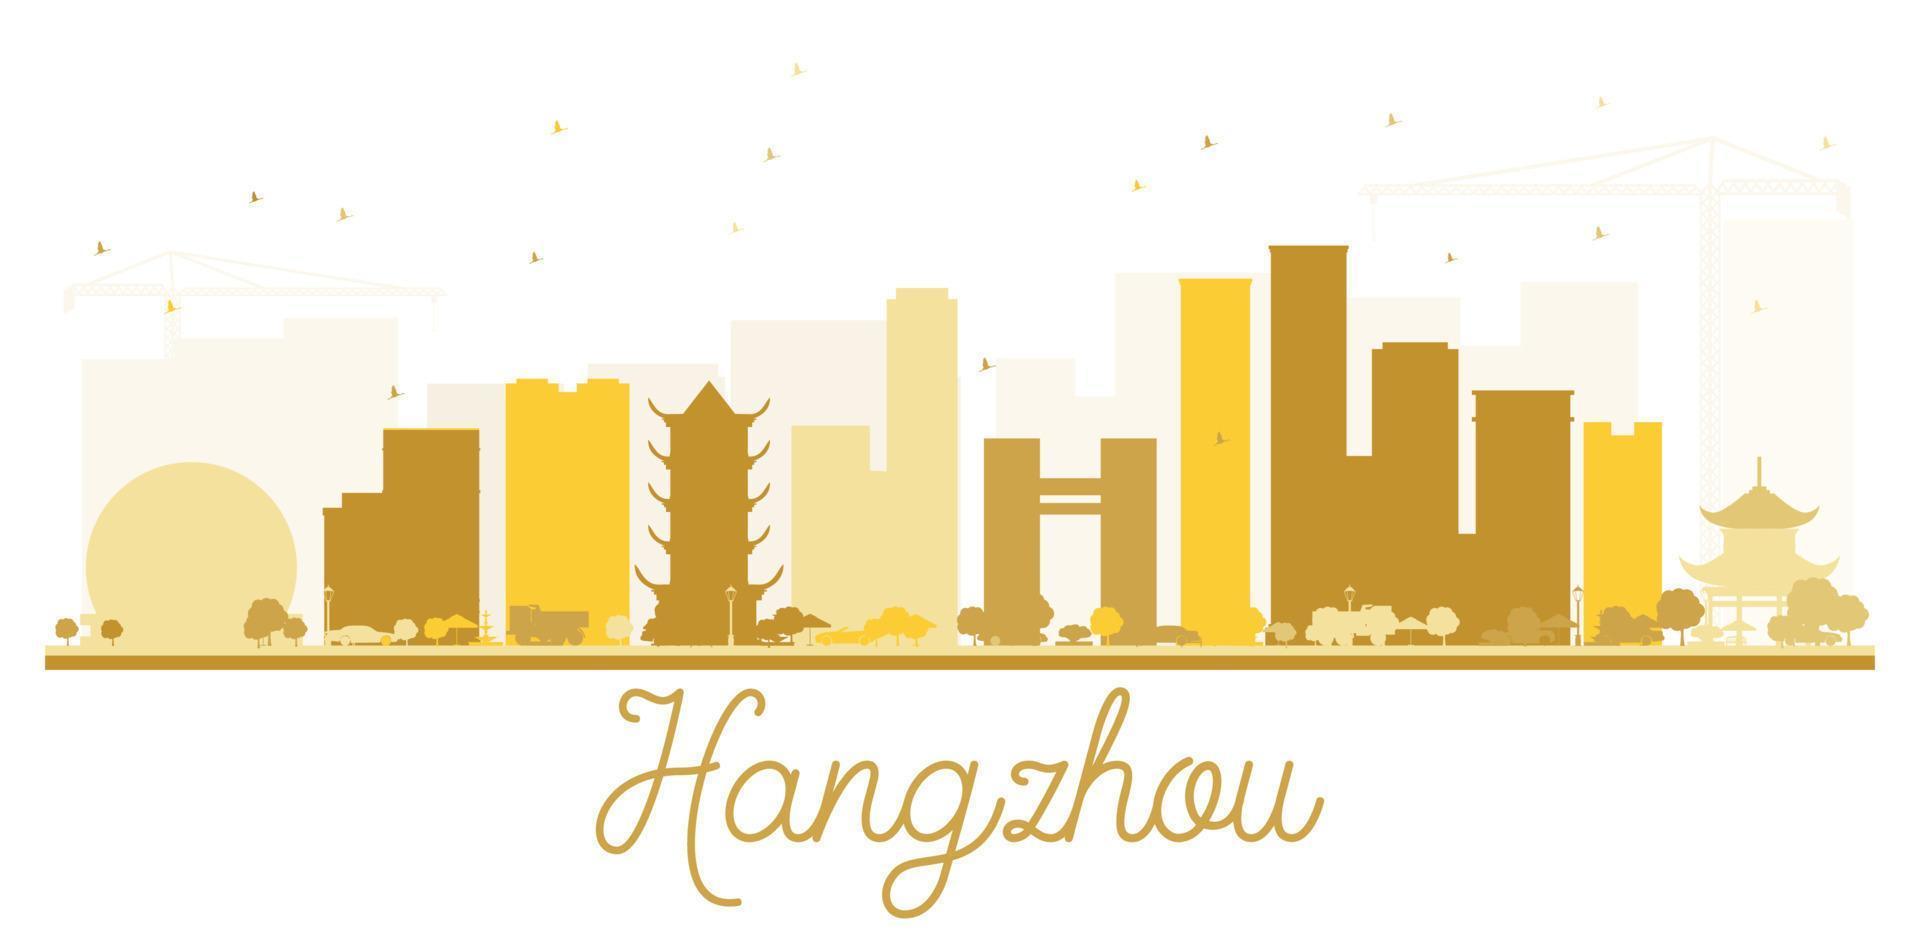 silueta dorada del horizonte de la ciudad de hangzhou. vector